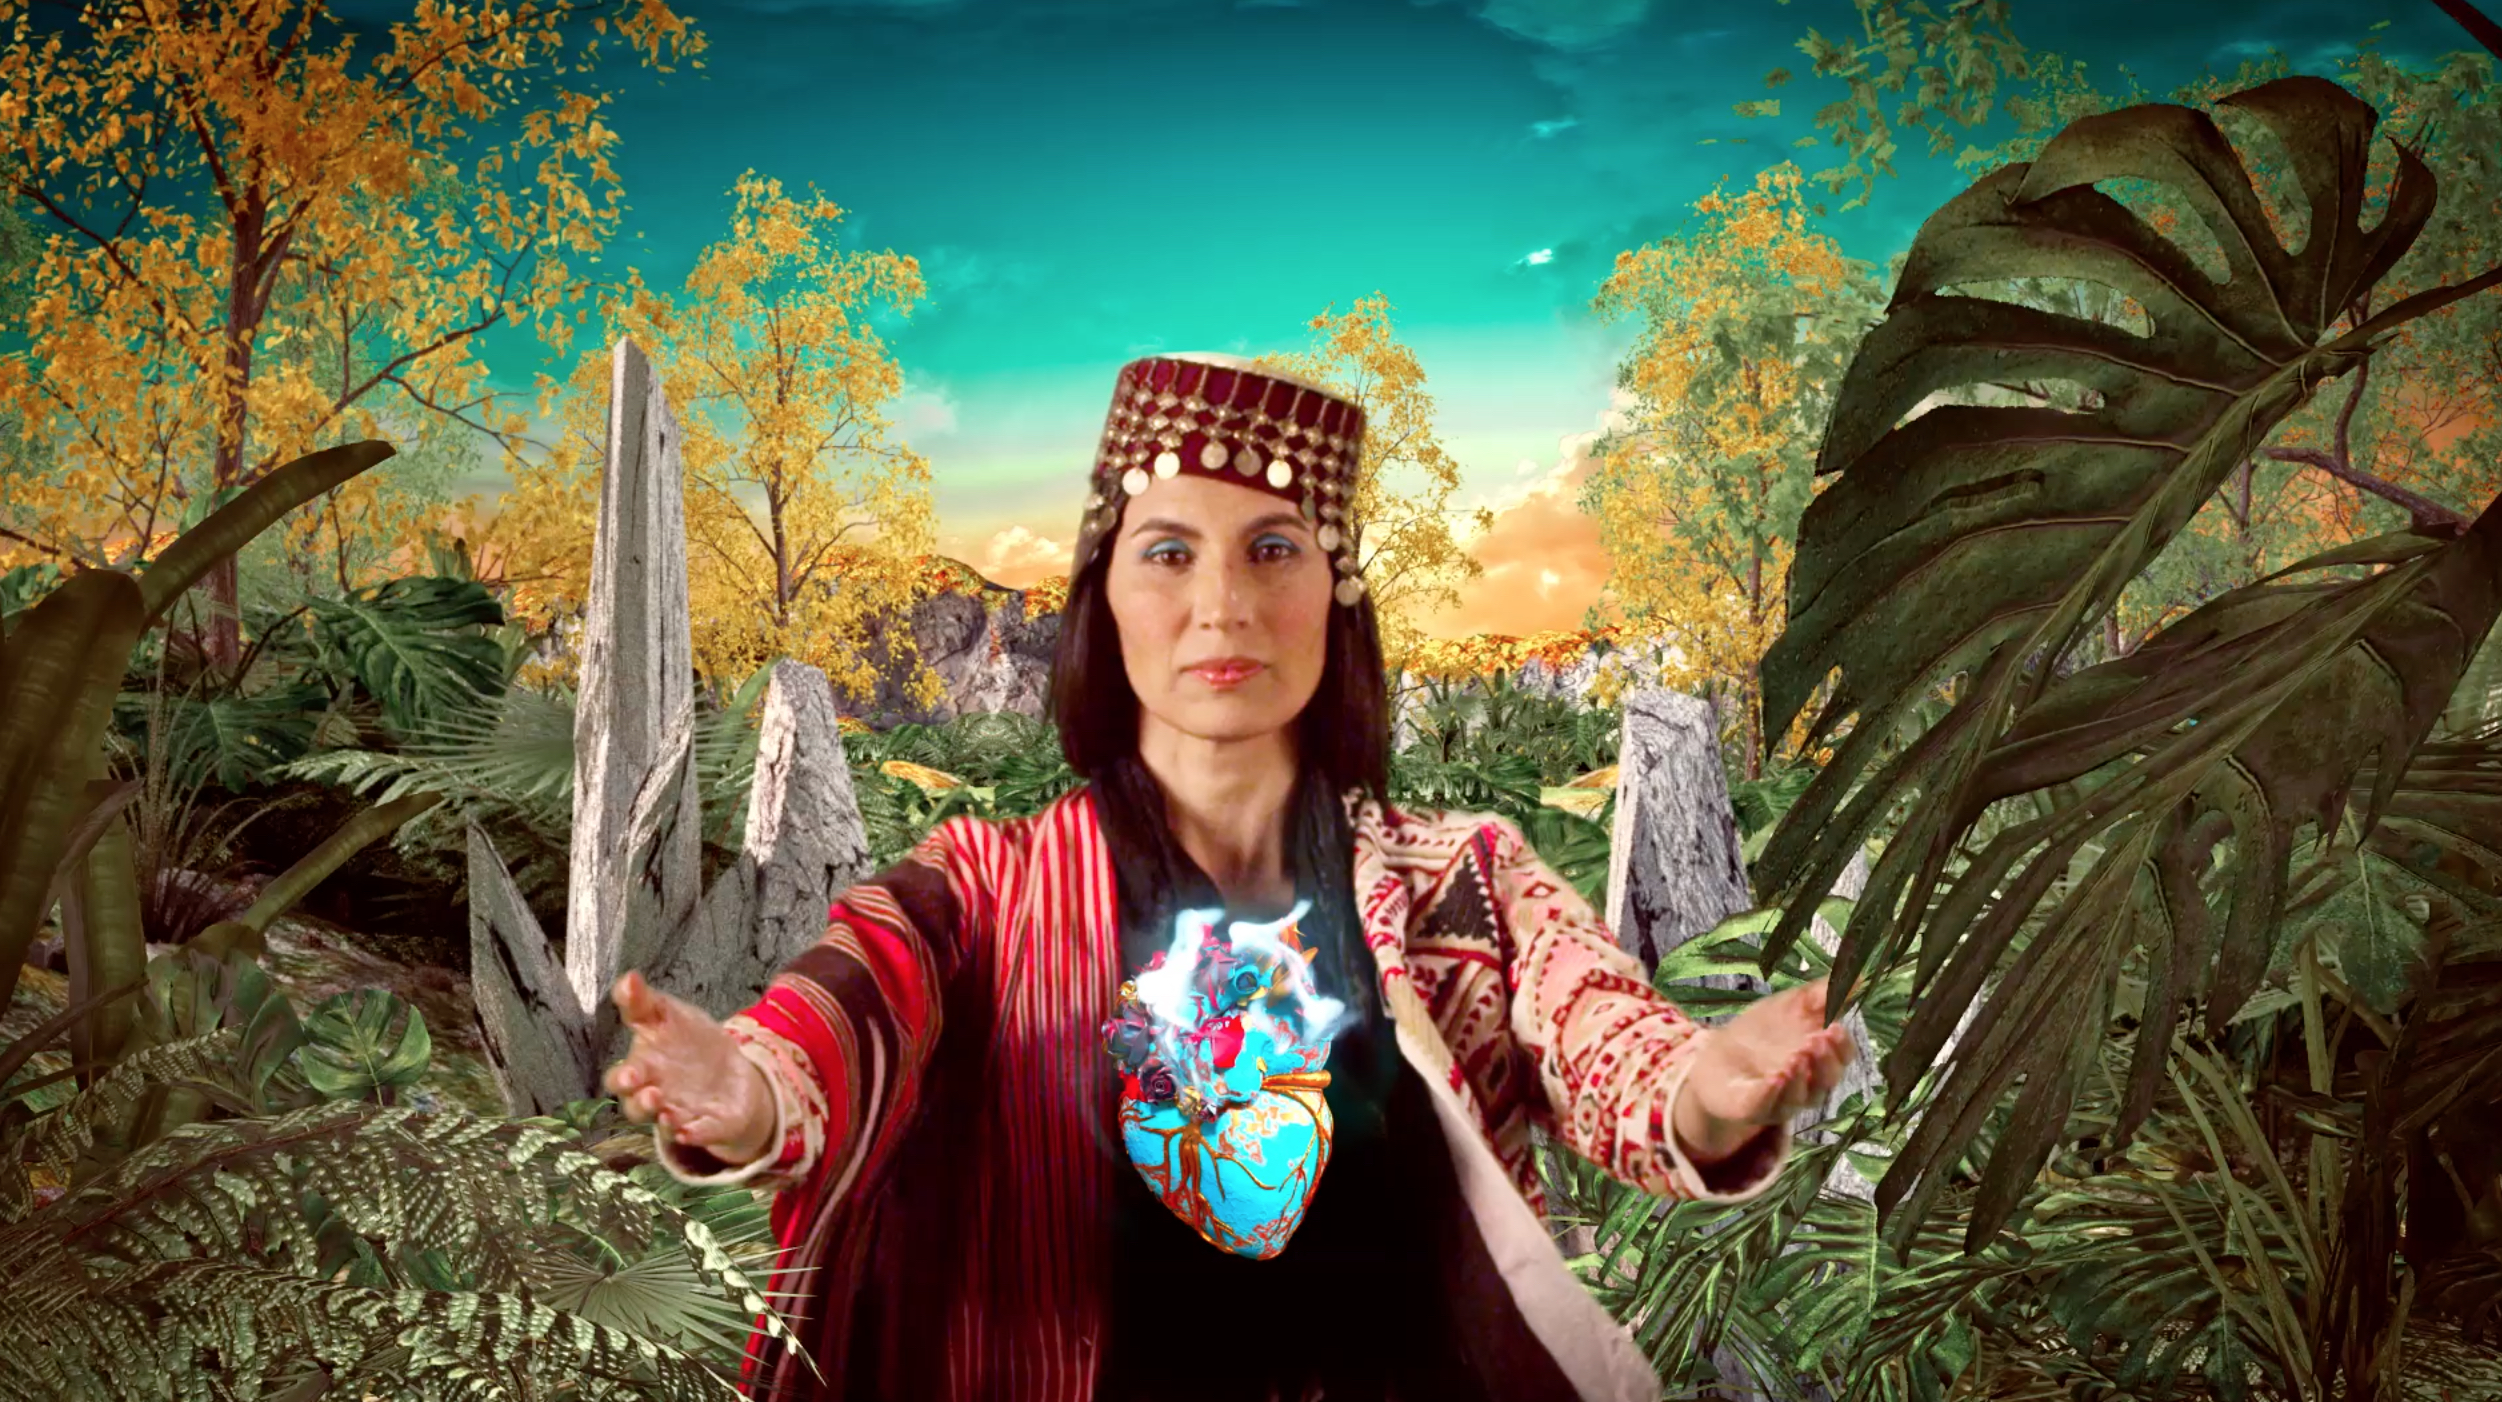 Maya Jupiter in "Madre Tierra" video